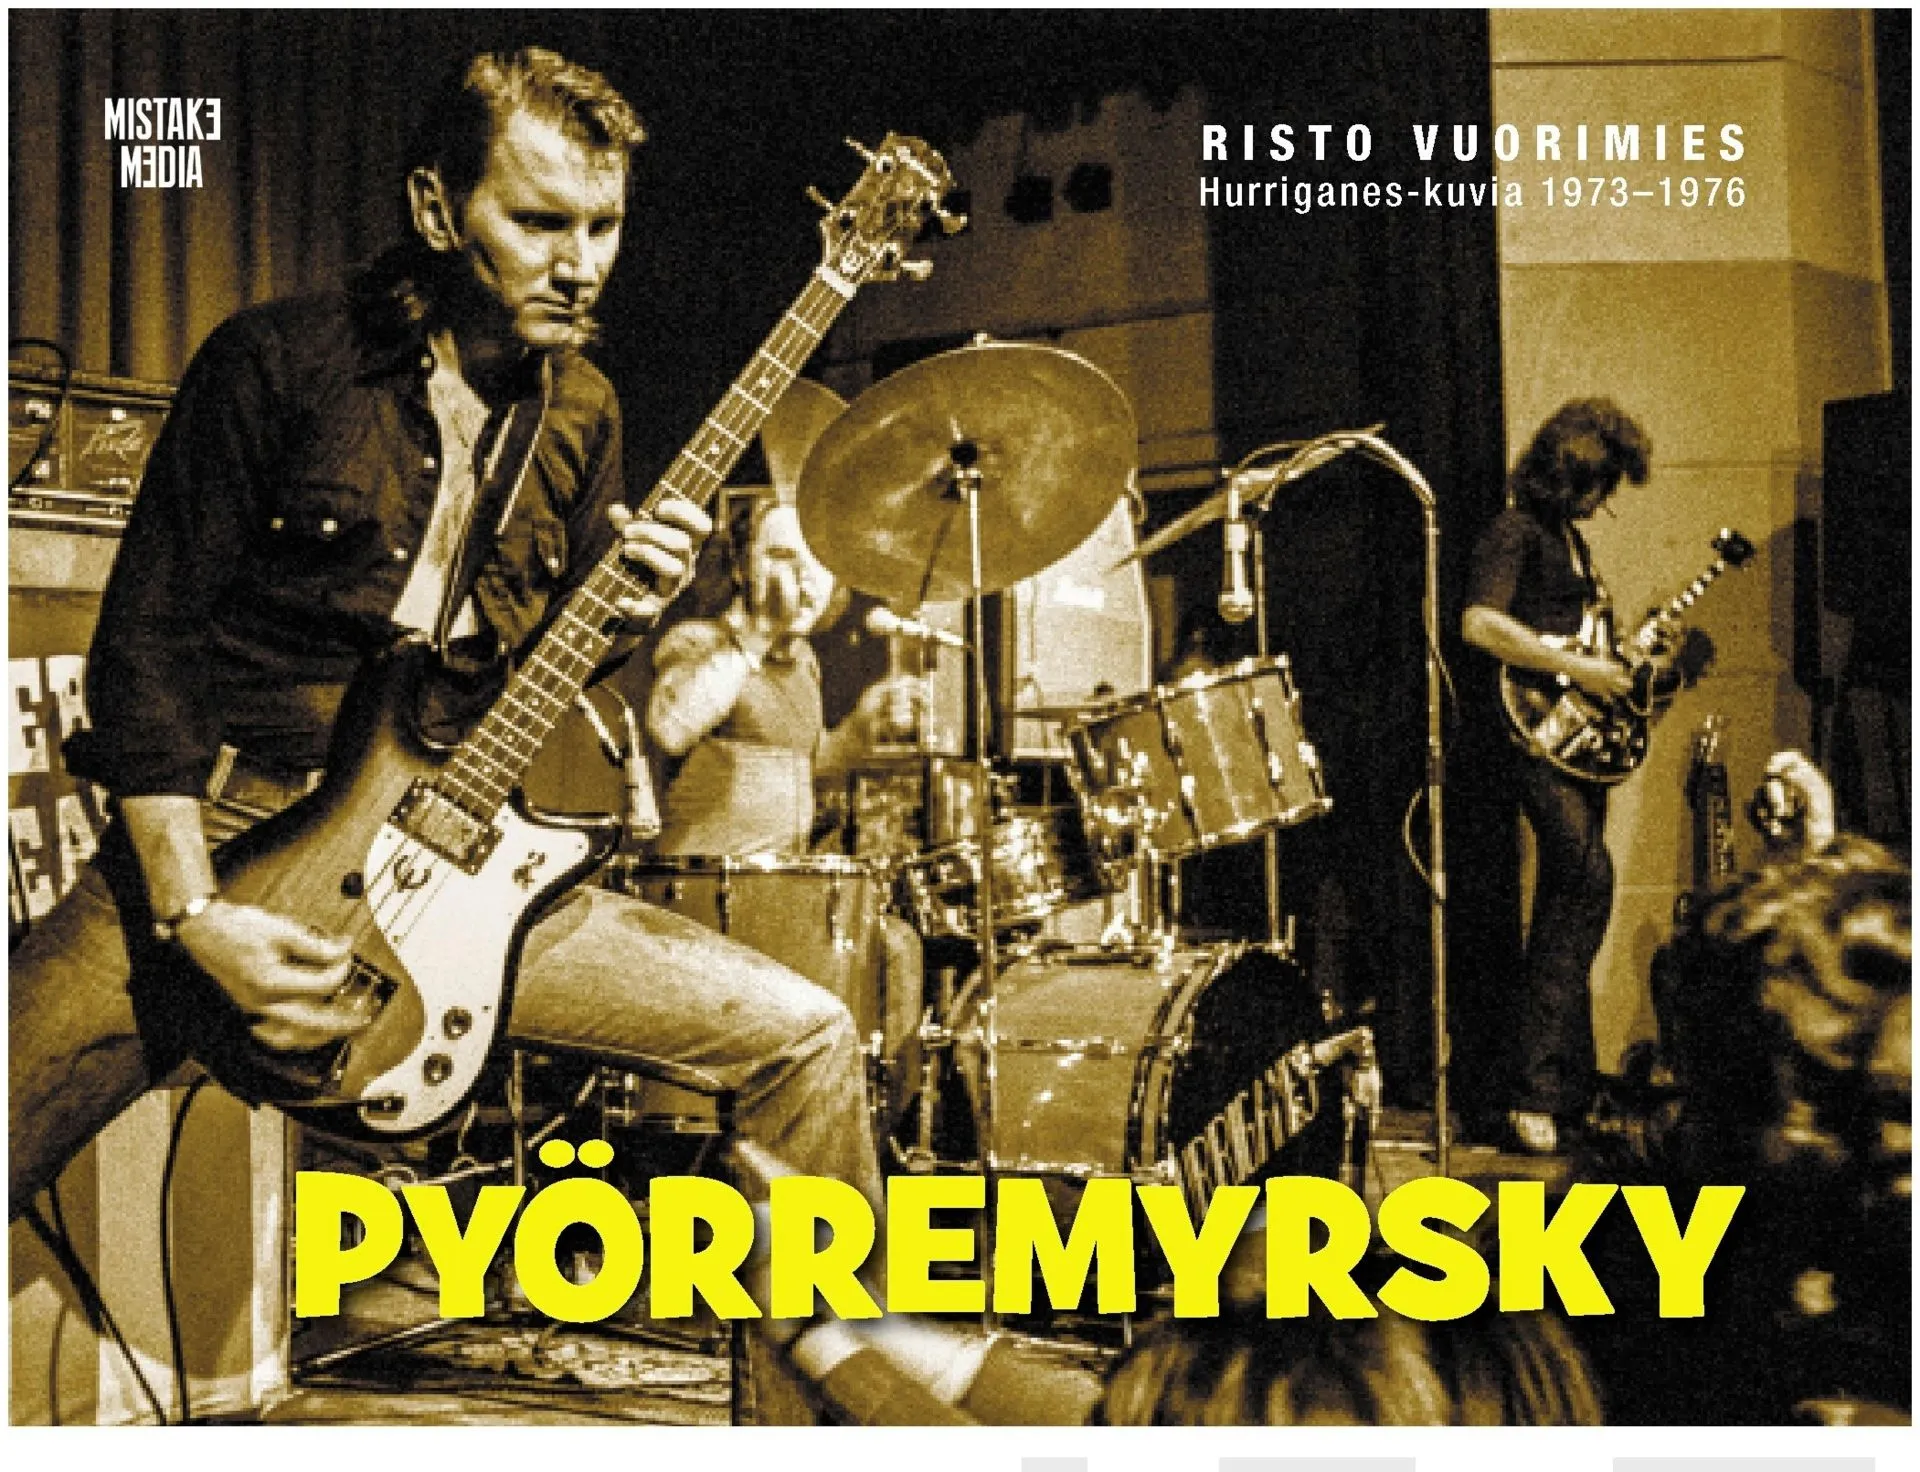 Pyörremyrsky - Risto Vuorimies - Hurriganes-kuvia 1973-1976